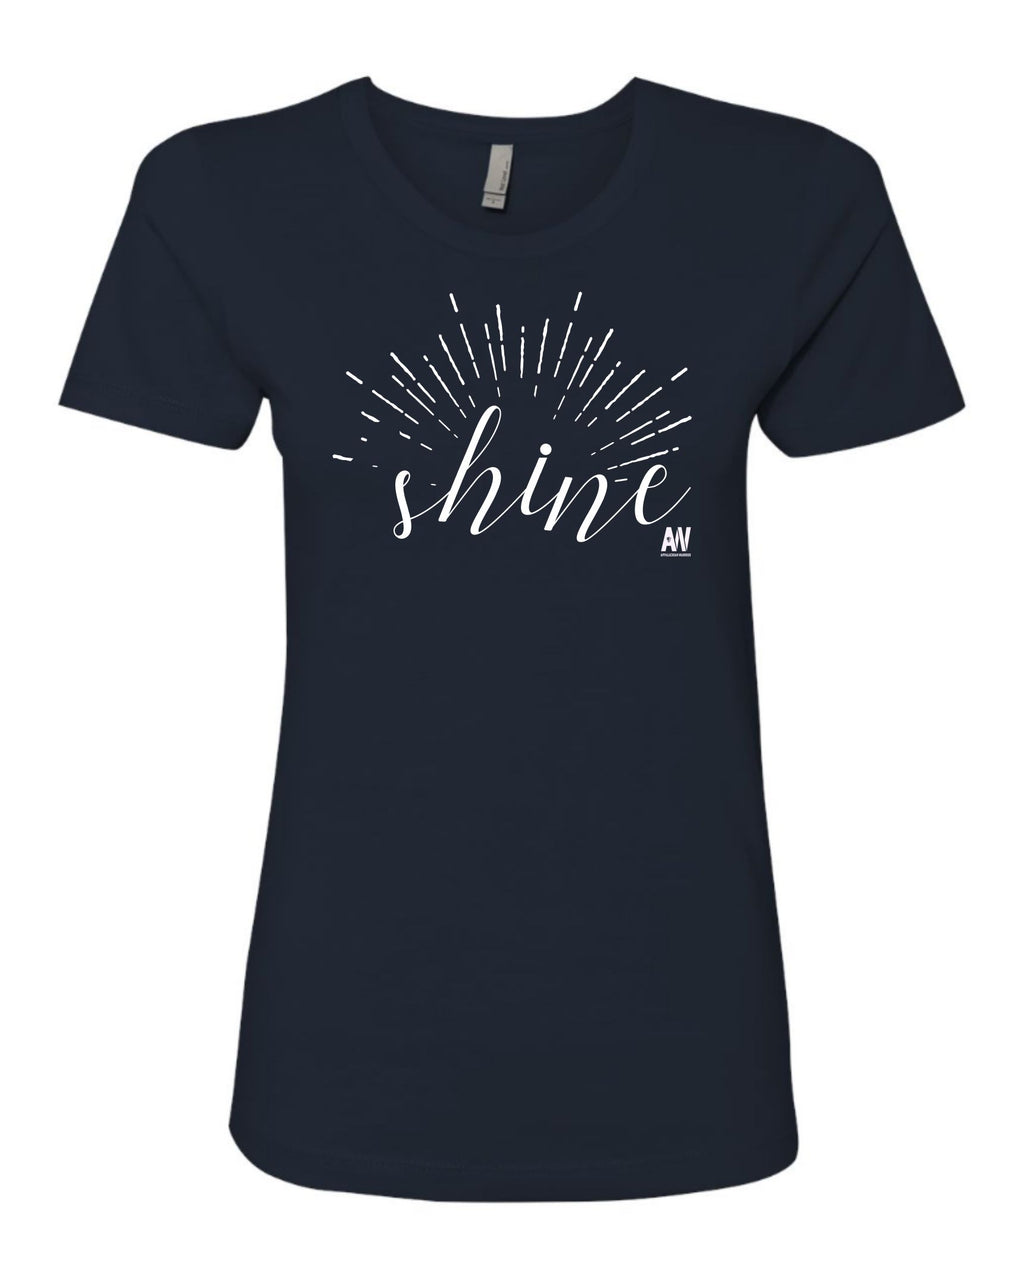 Shine - Women's Shirt